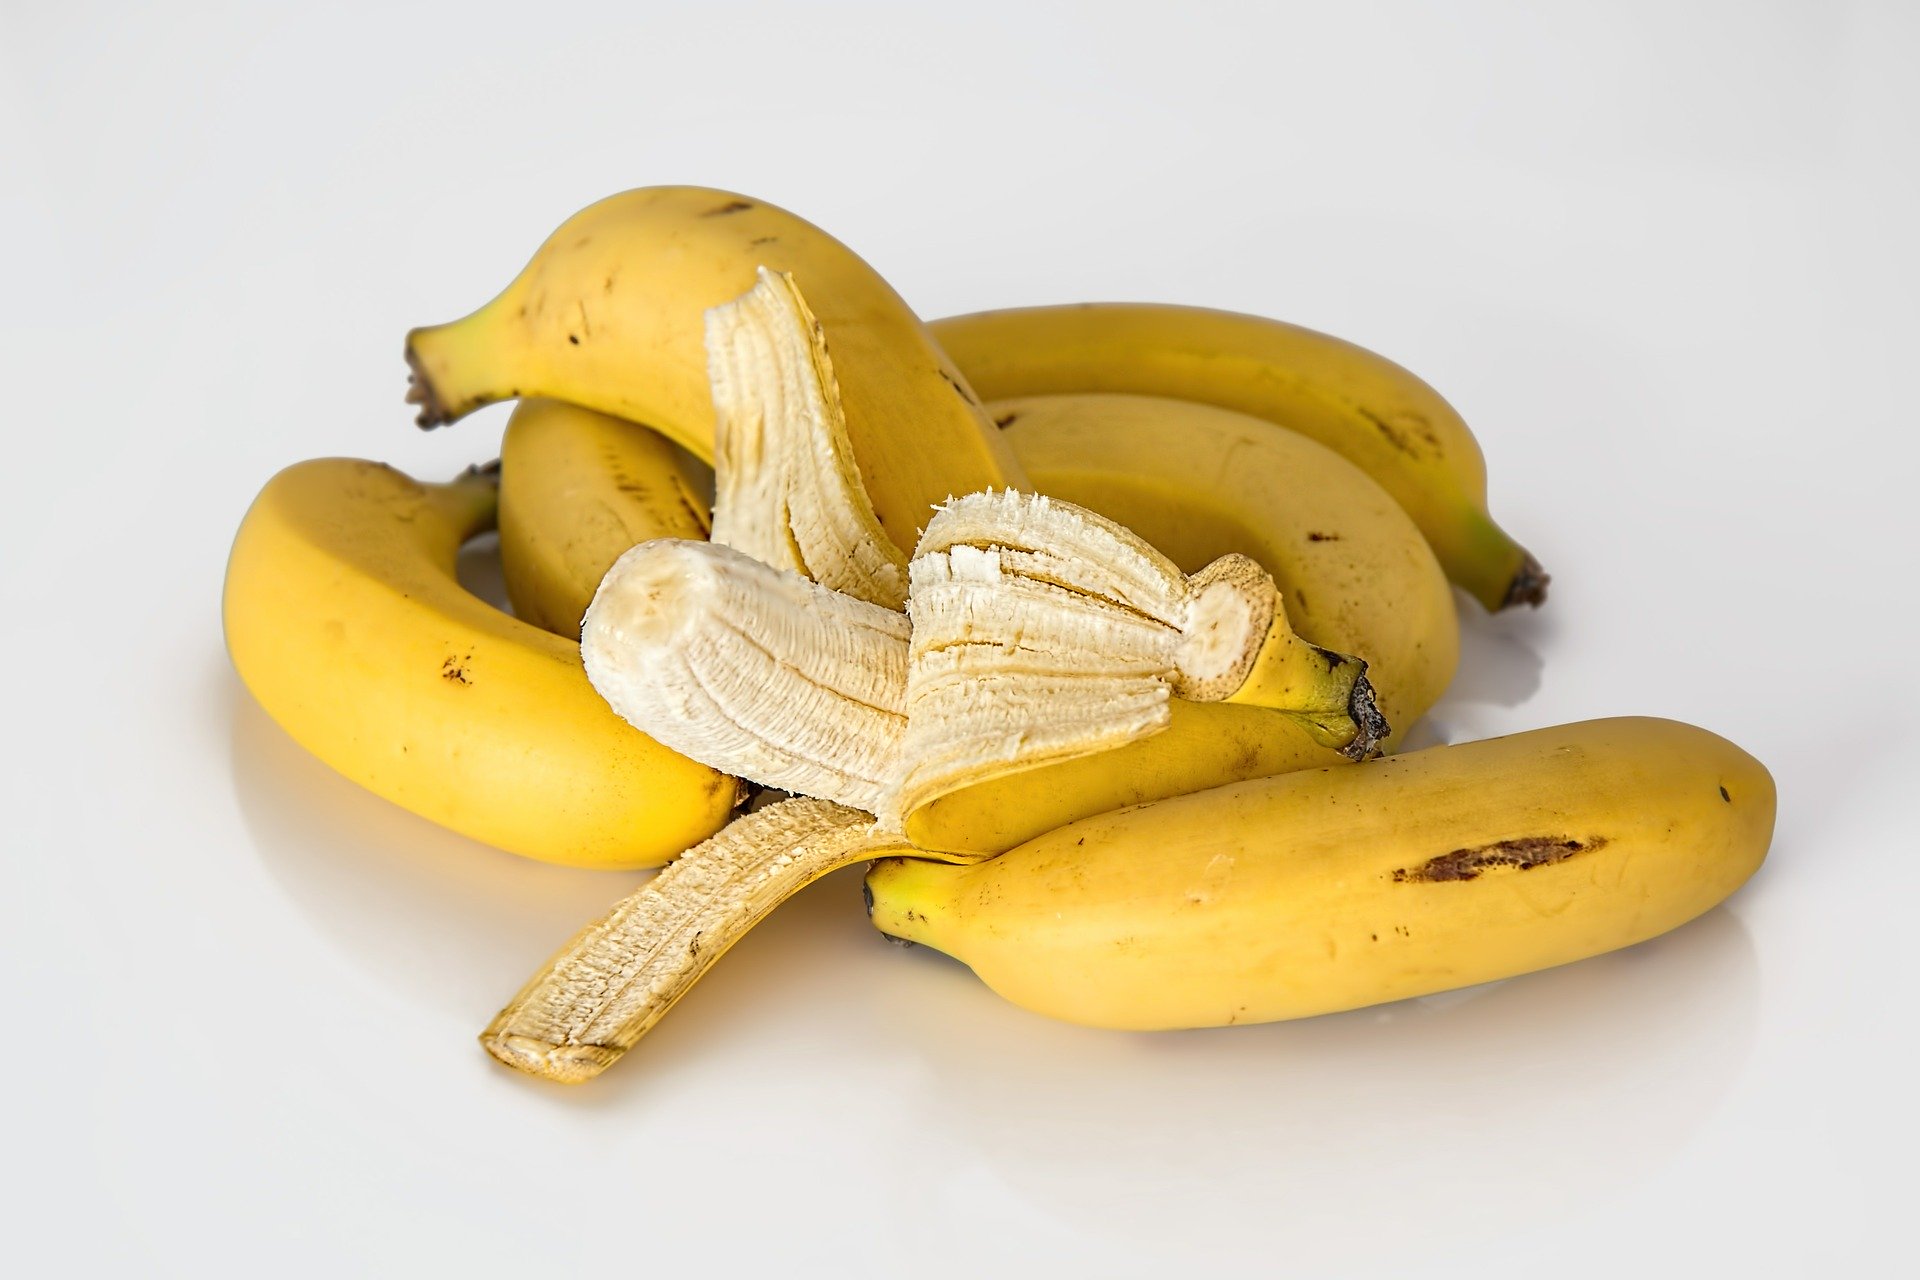 Bananas do not make you fat - Enjoy the Goodness